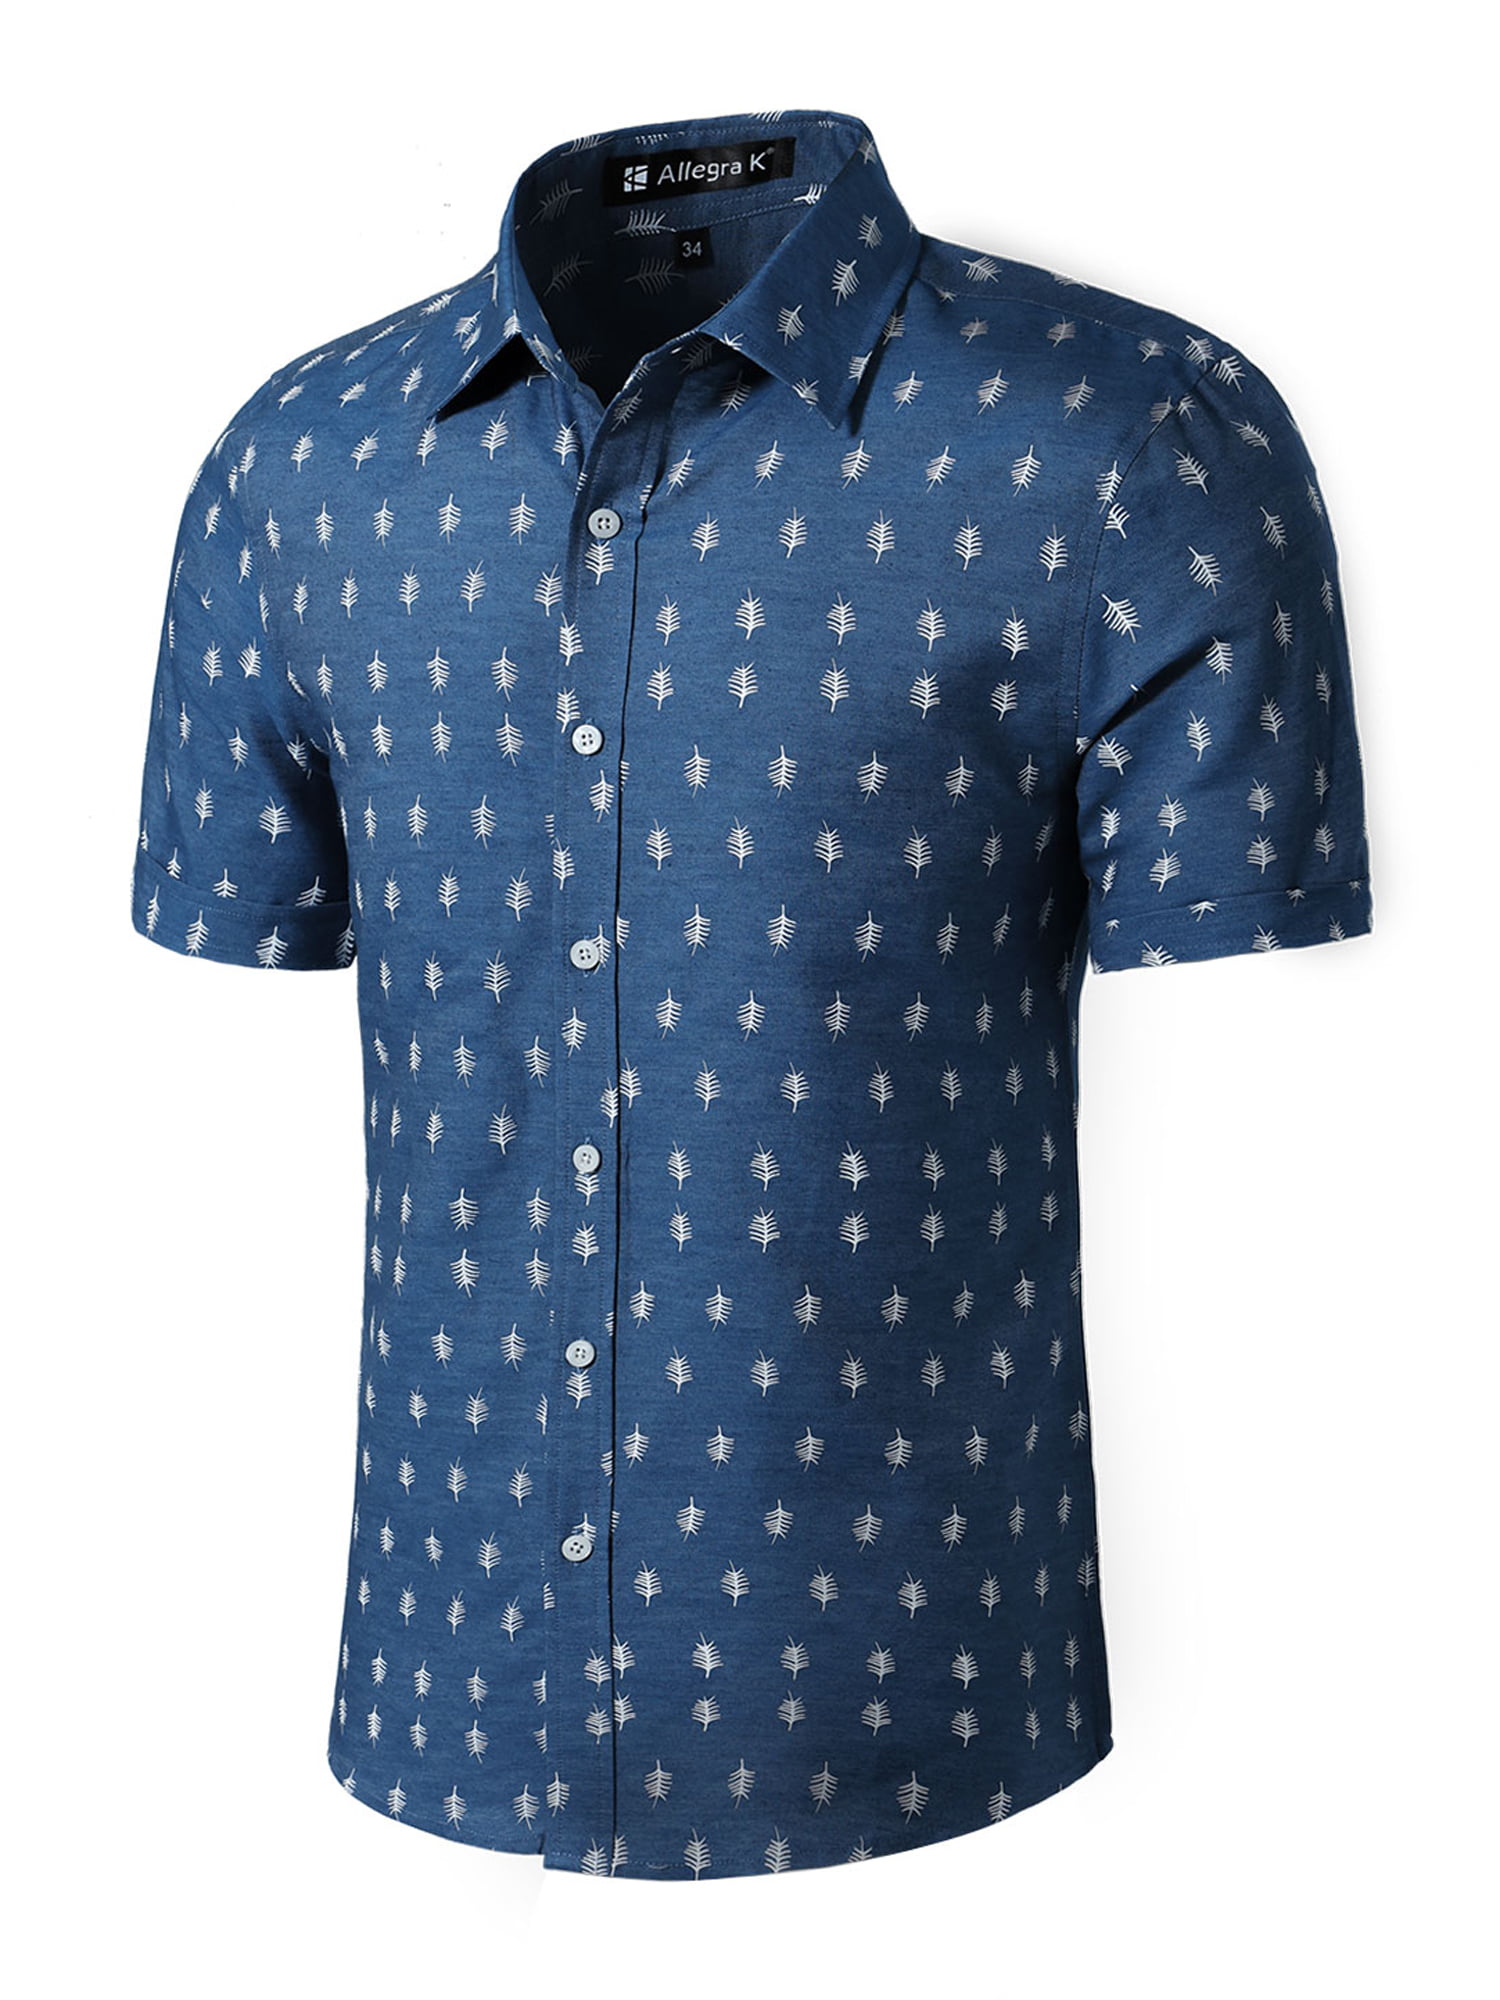 Unique Bargains - Men's Collared Short Sleeve Button-Down Slim Shirt ...